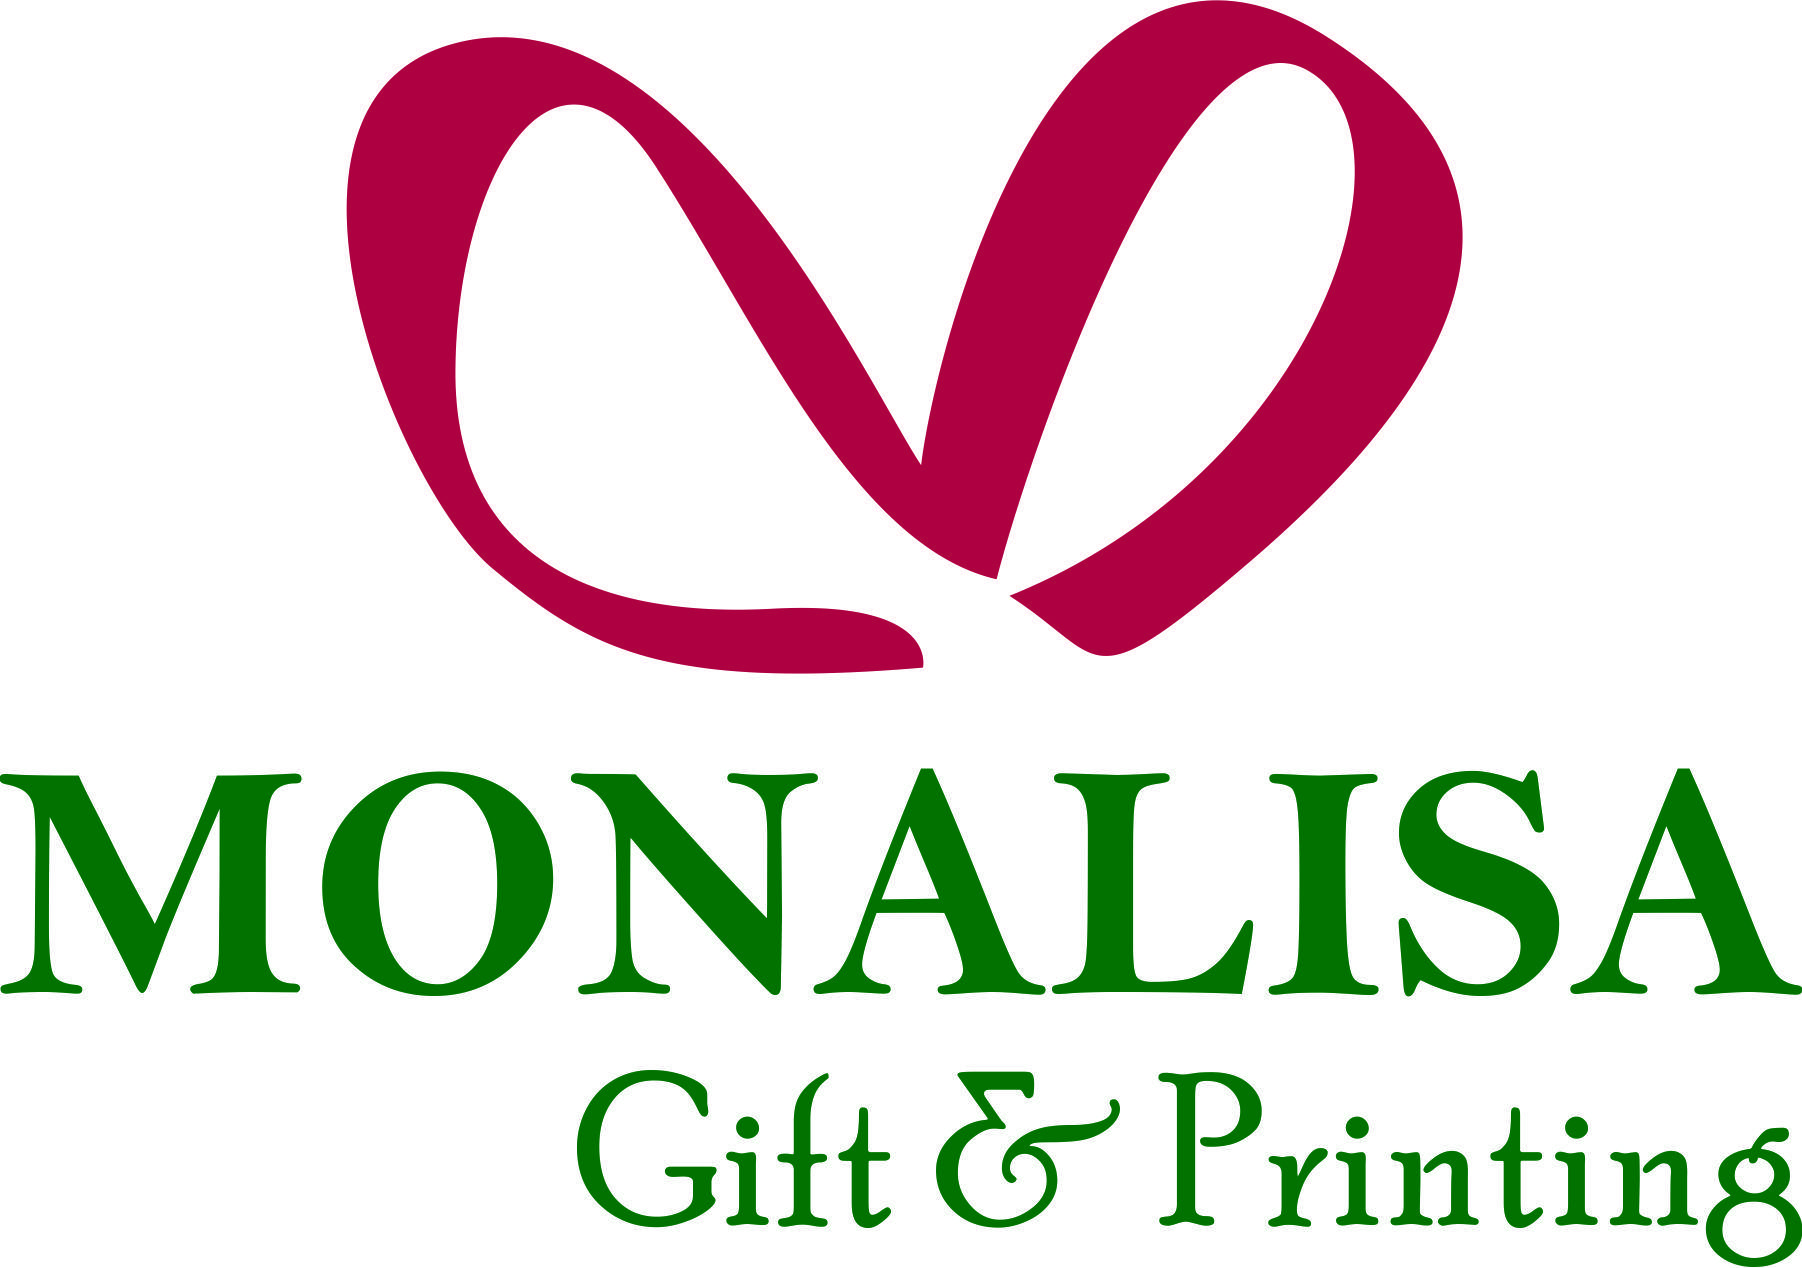 Monalisa - In ấn và quà tặng doanh nghiệp